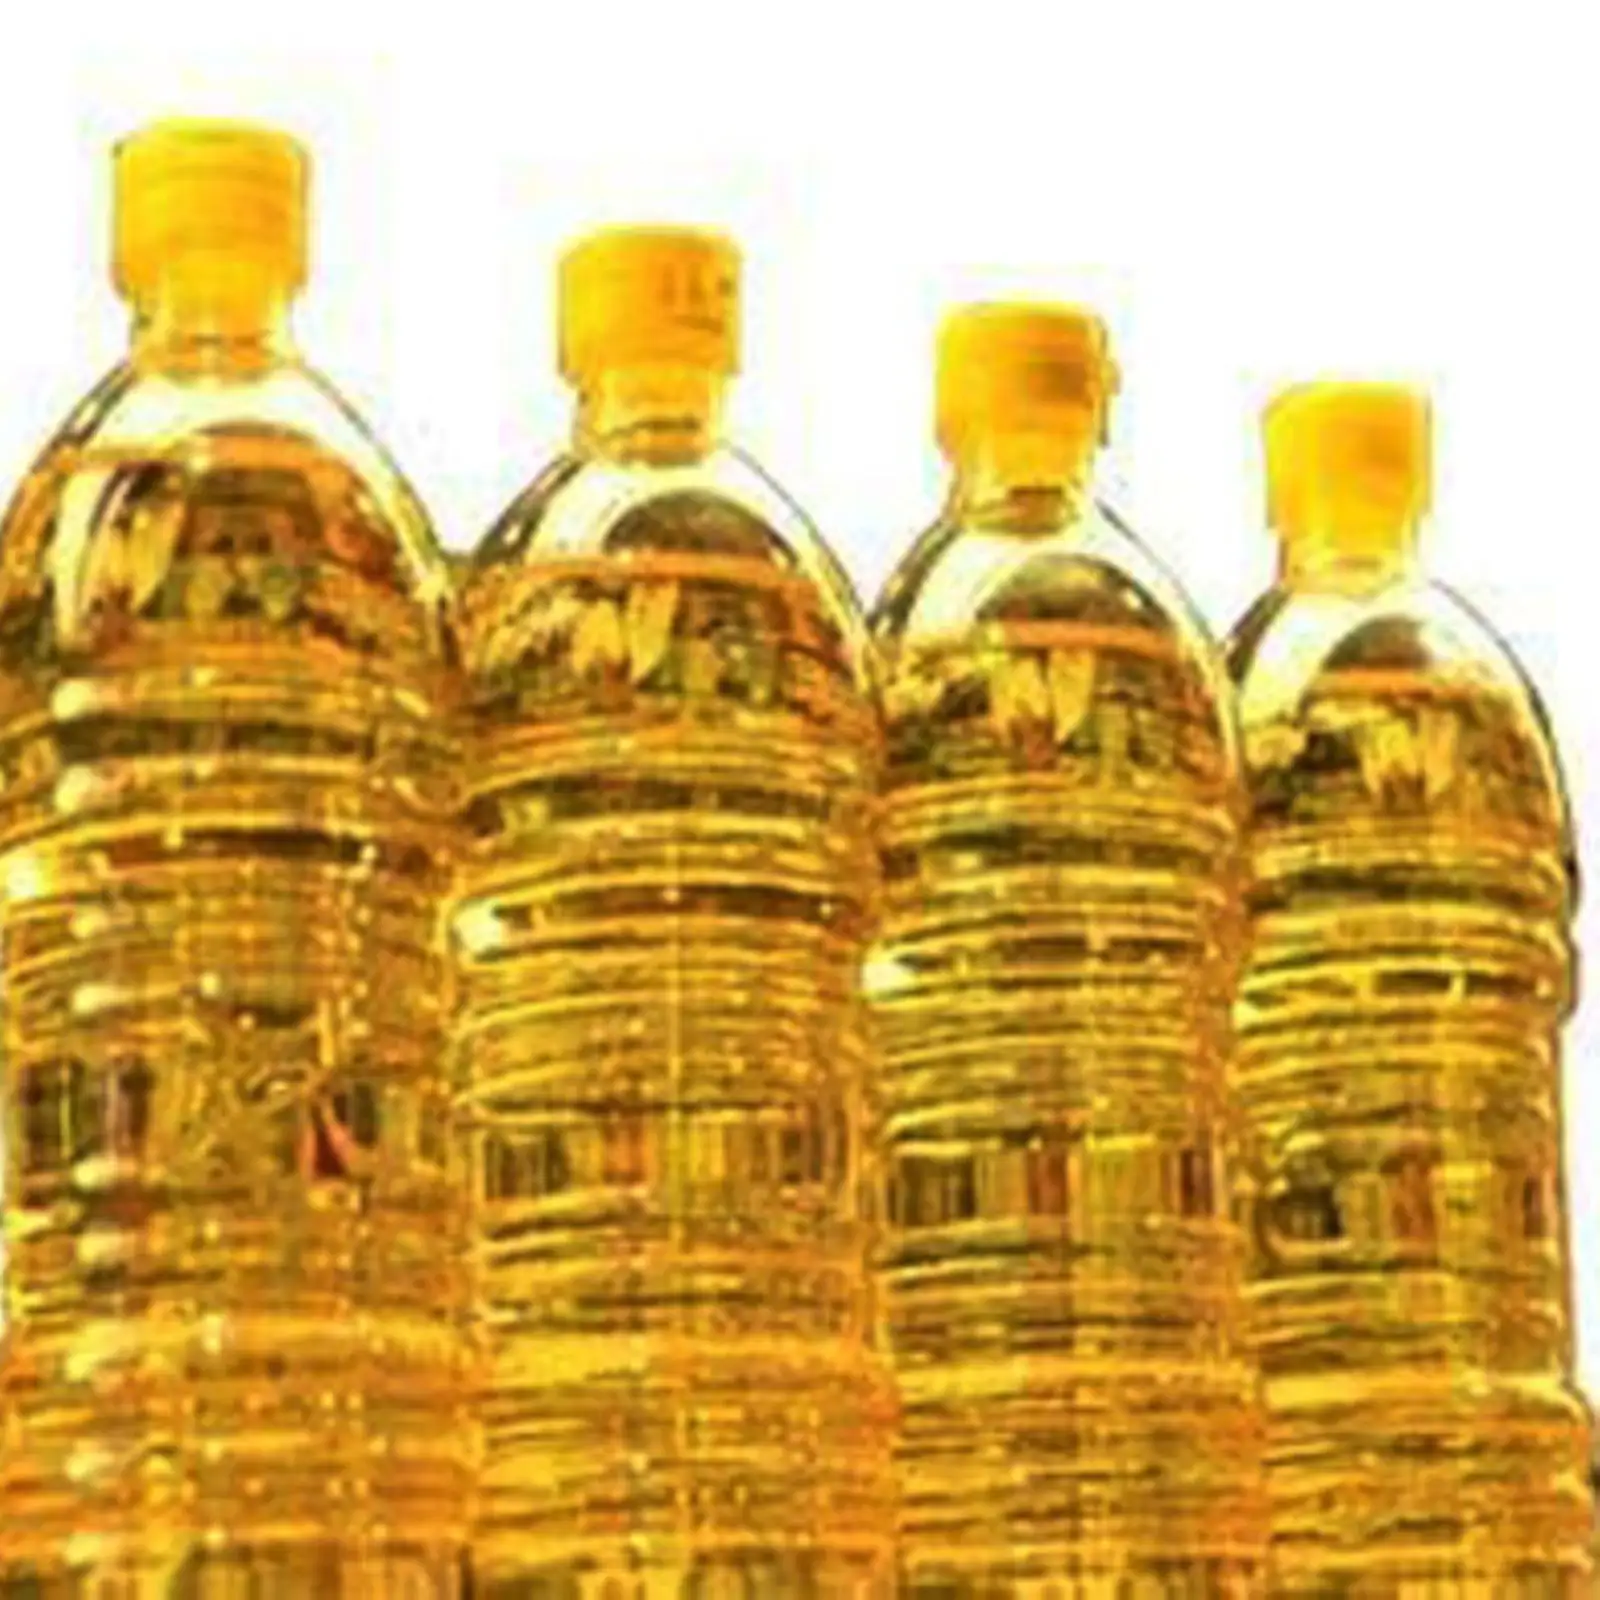 Anlagenverkauf gebrauchtes Speiseöl für Biodiesel Anlagenmaschinen Ausbildung medizinische industrielle Leistung Lebensmittelherkunft Vakuum